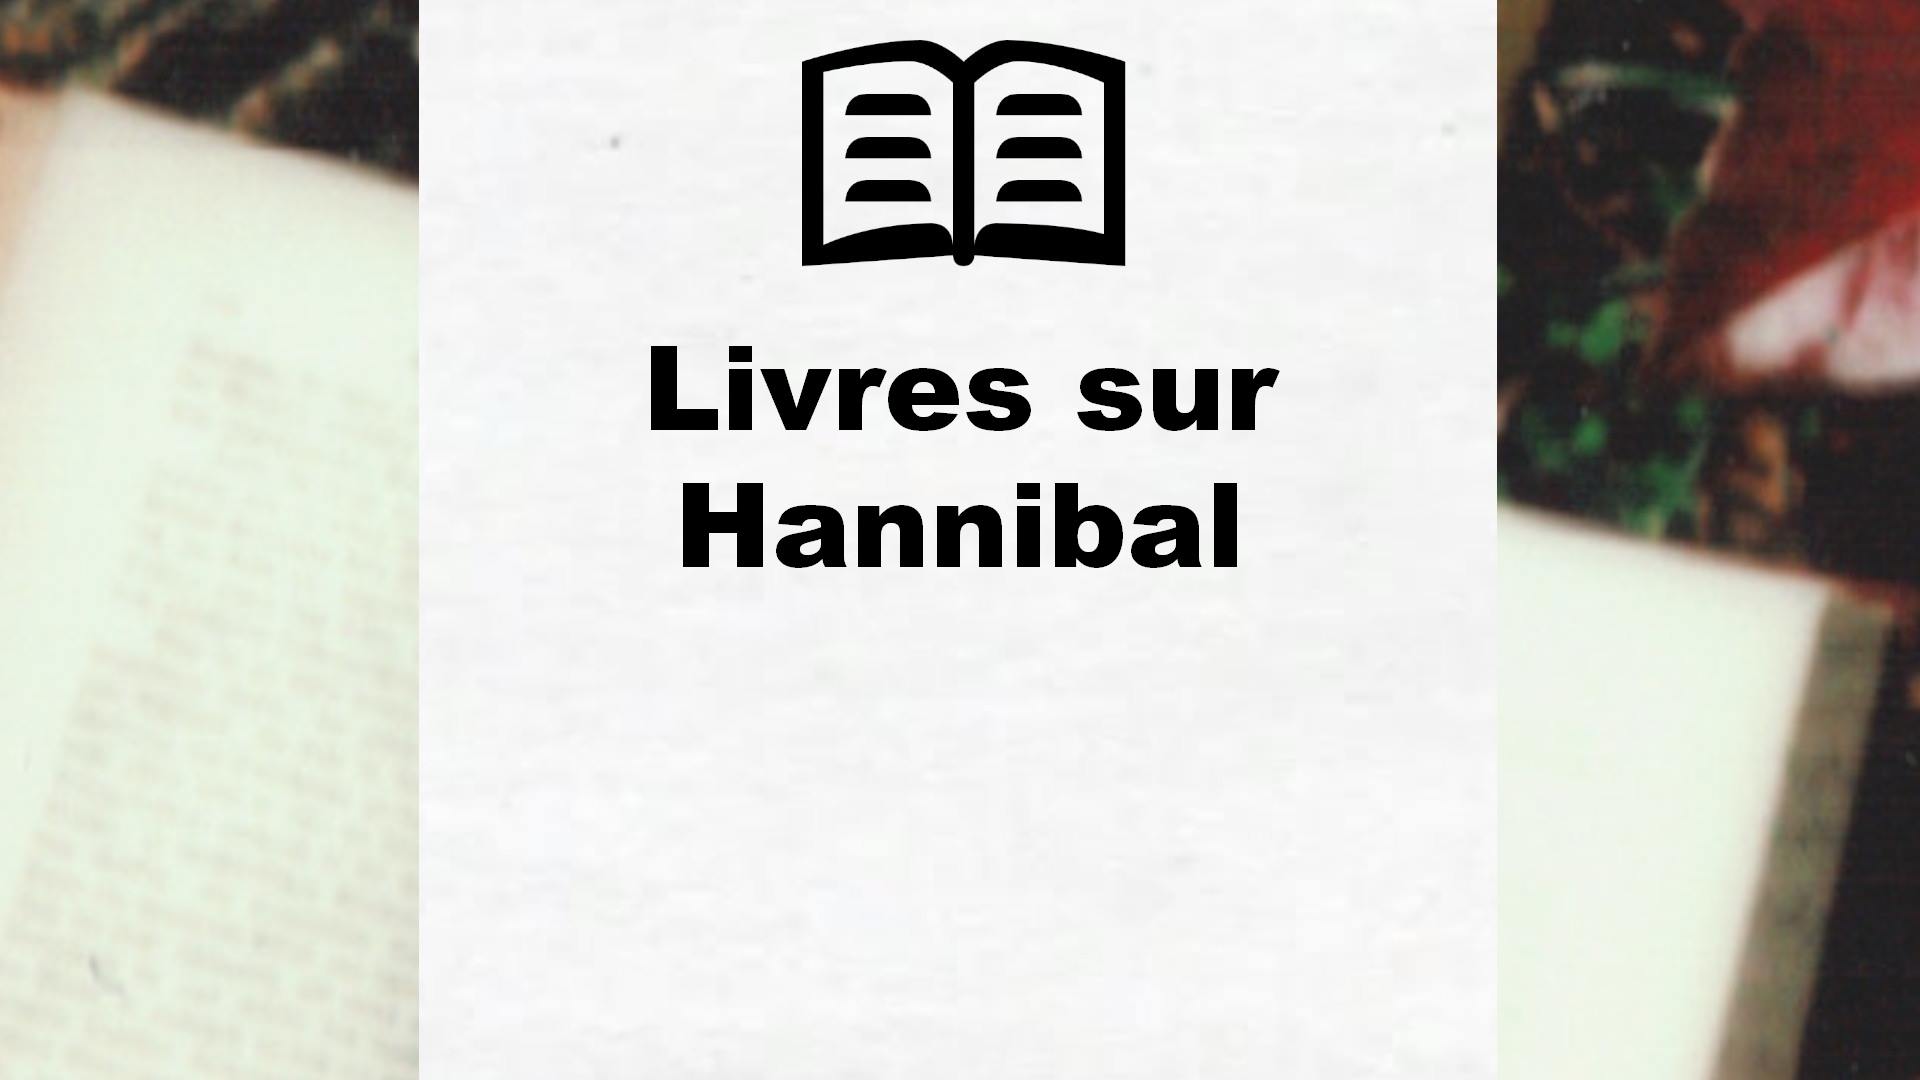 Livres sur Hannibal